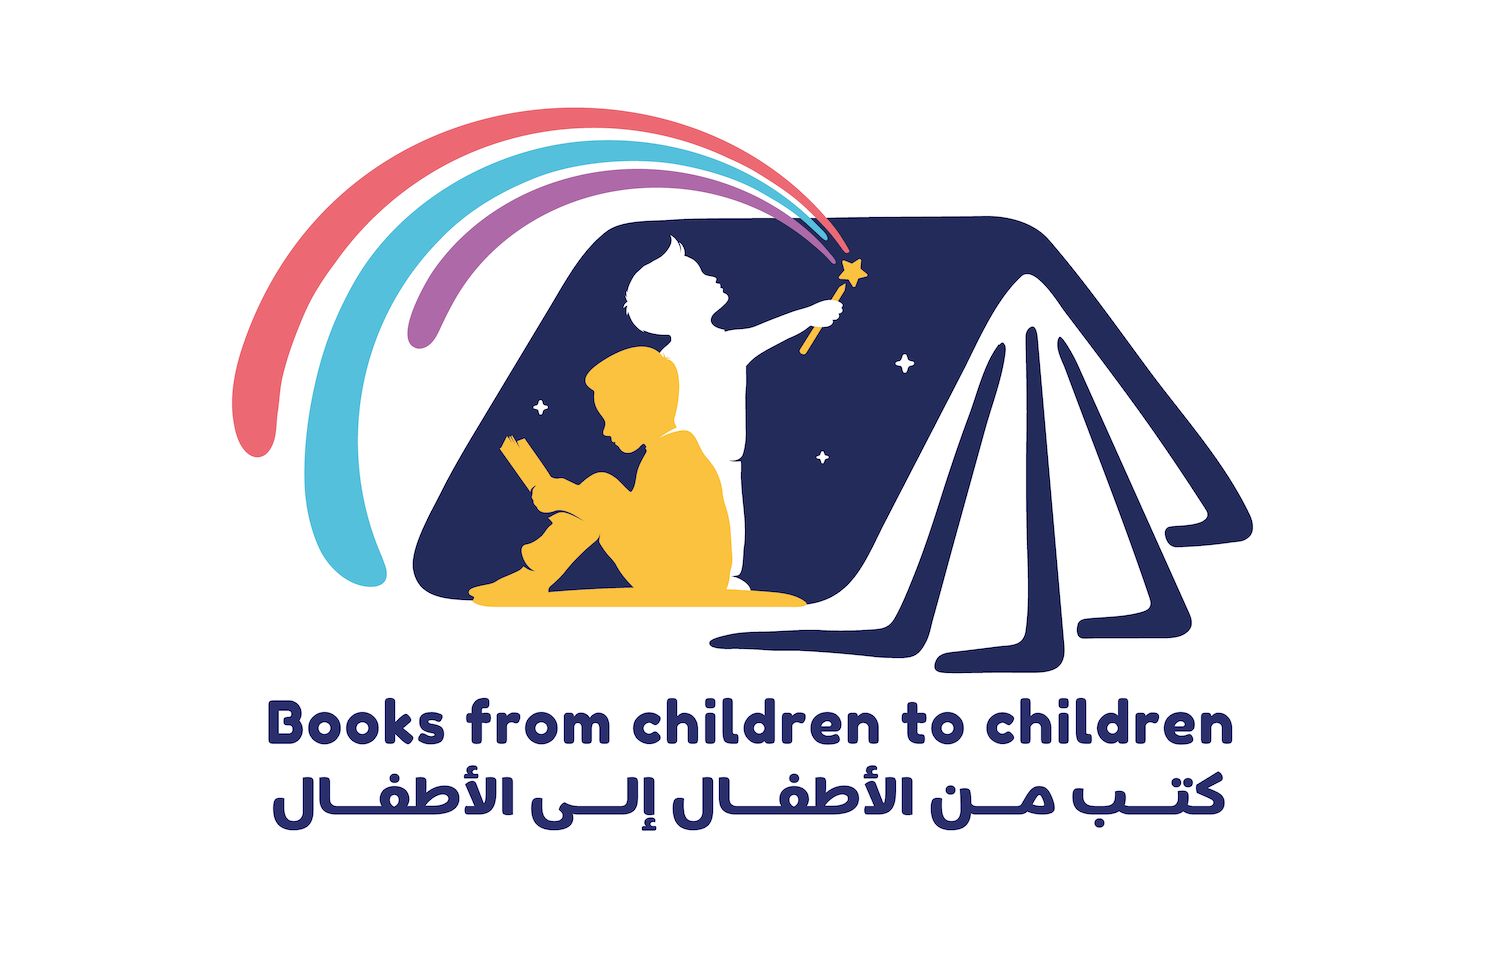 Books From Children to Children